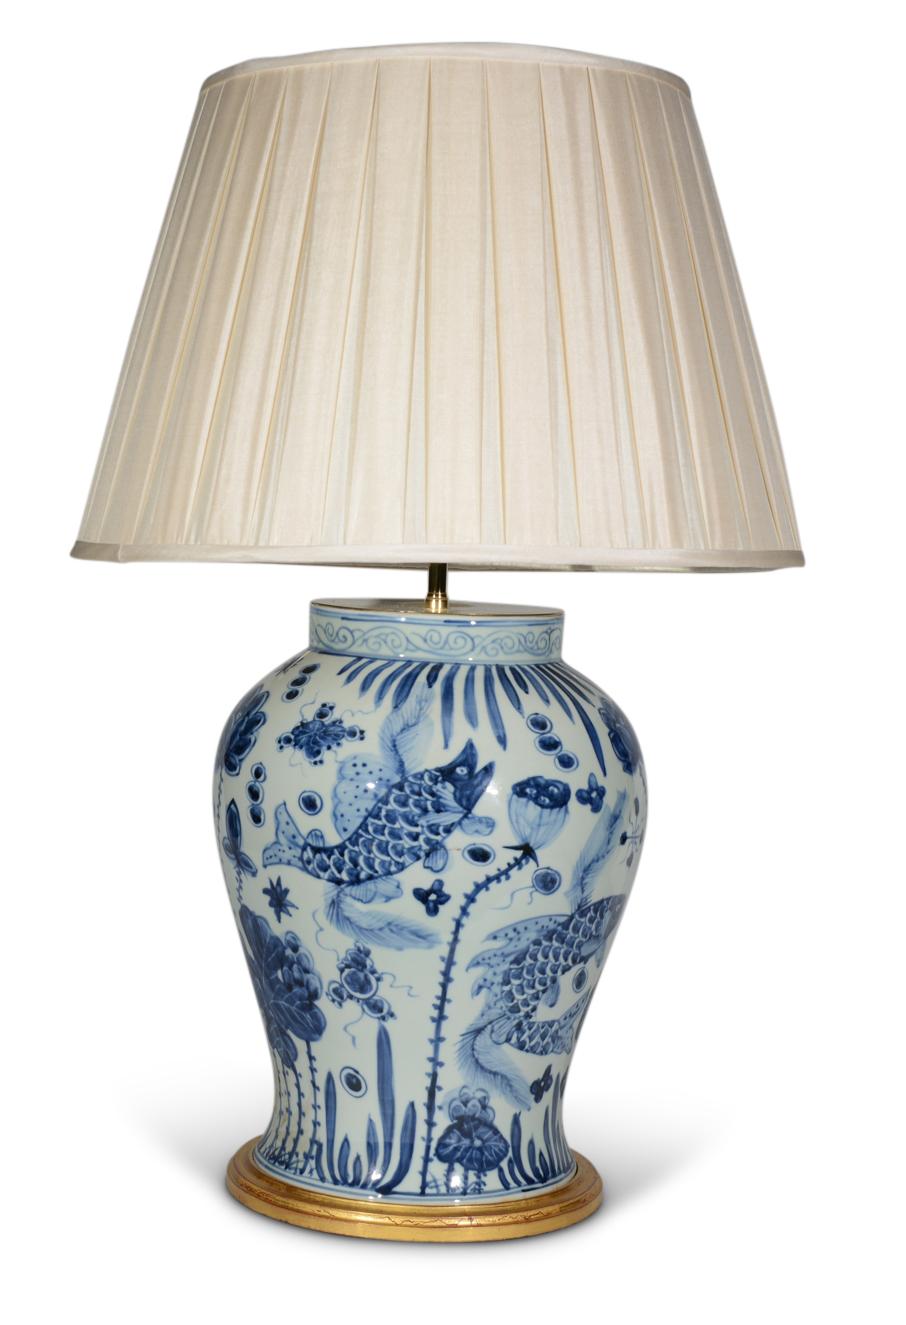 Une belle paire de vases balustres chinois bleu et blanc, décorés dans le goût Kangxi dans des tons de bleu sur fond blanc, avec des poissons exotiques dans un paysage aquatique, maintenant montés comme lampes avec des bases tournées dorées à la